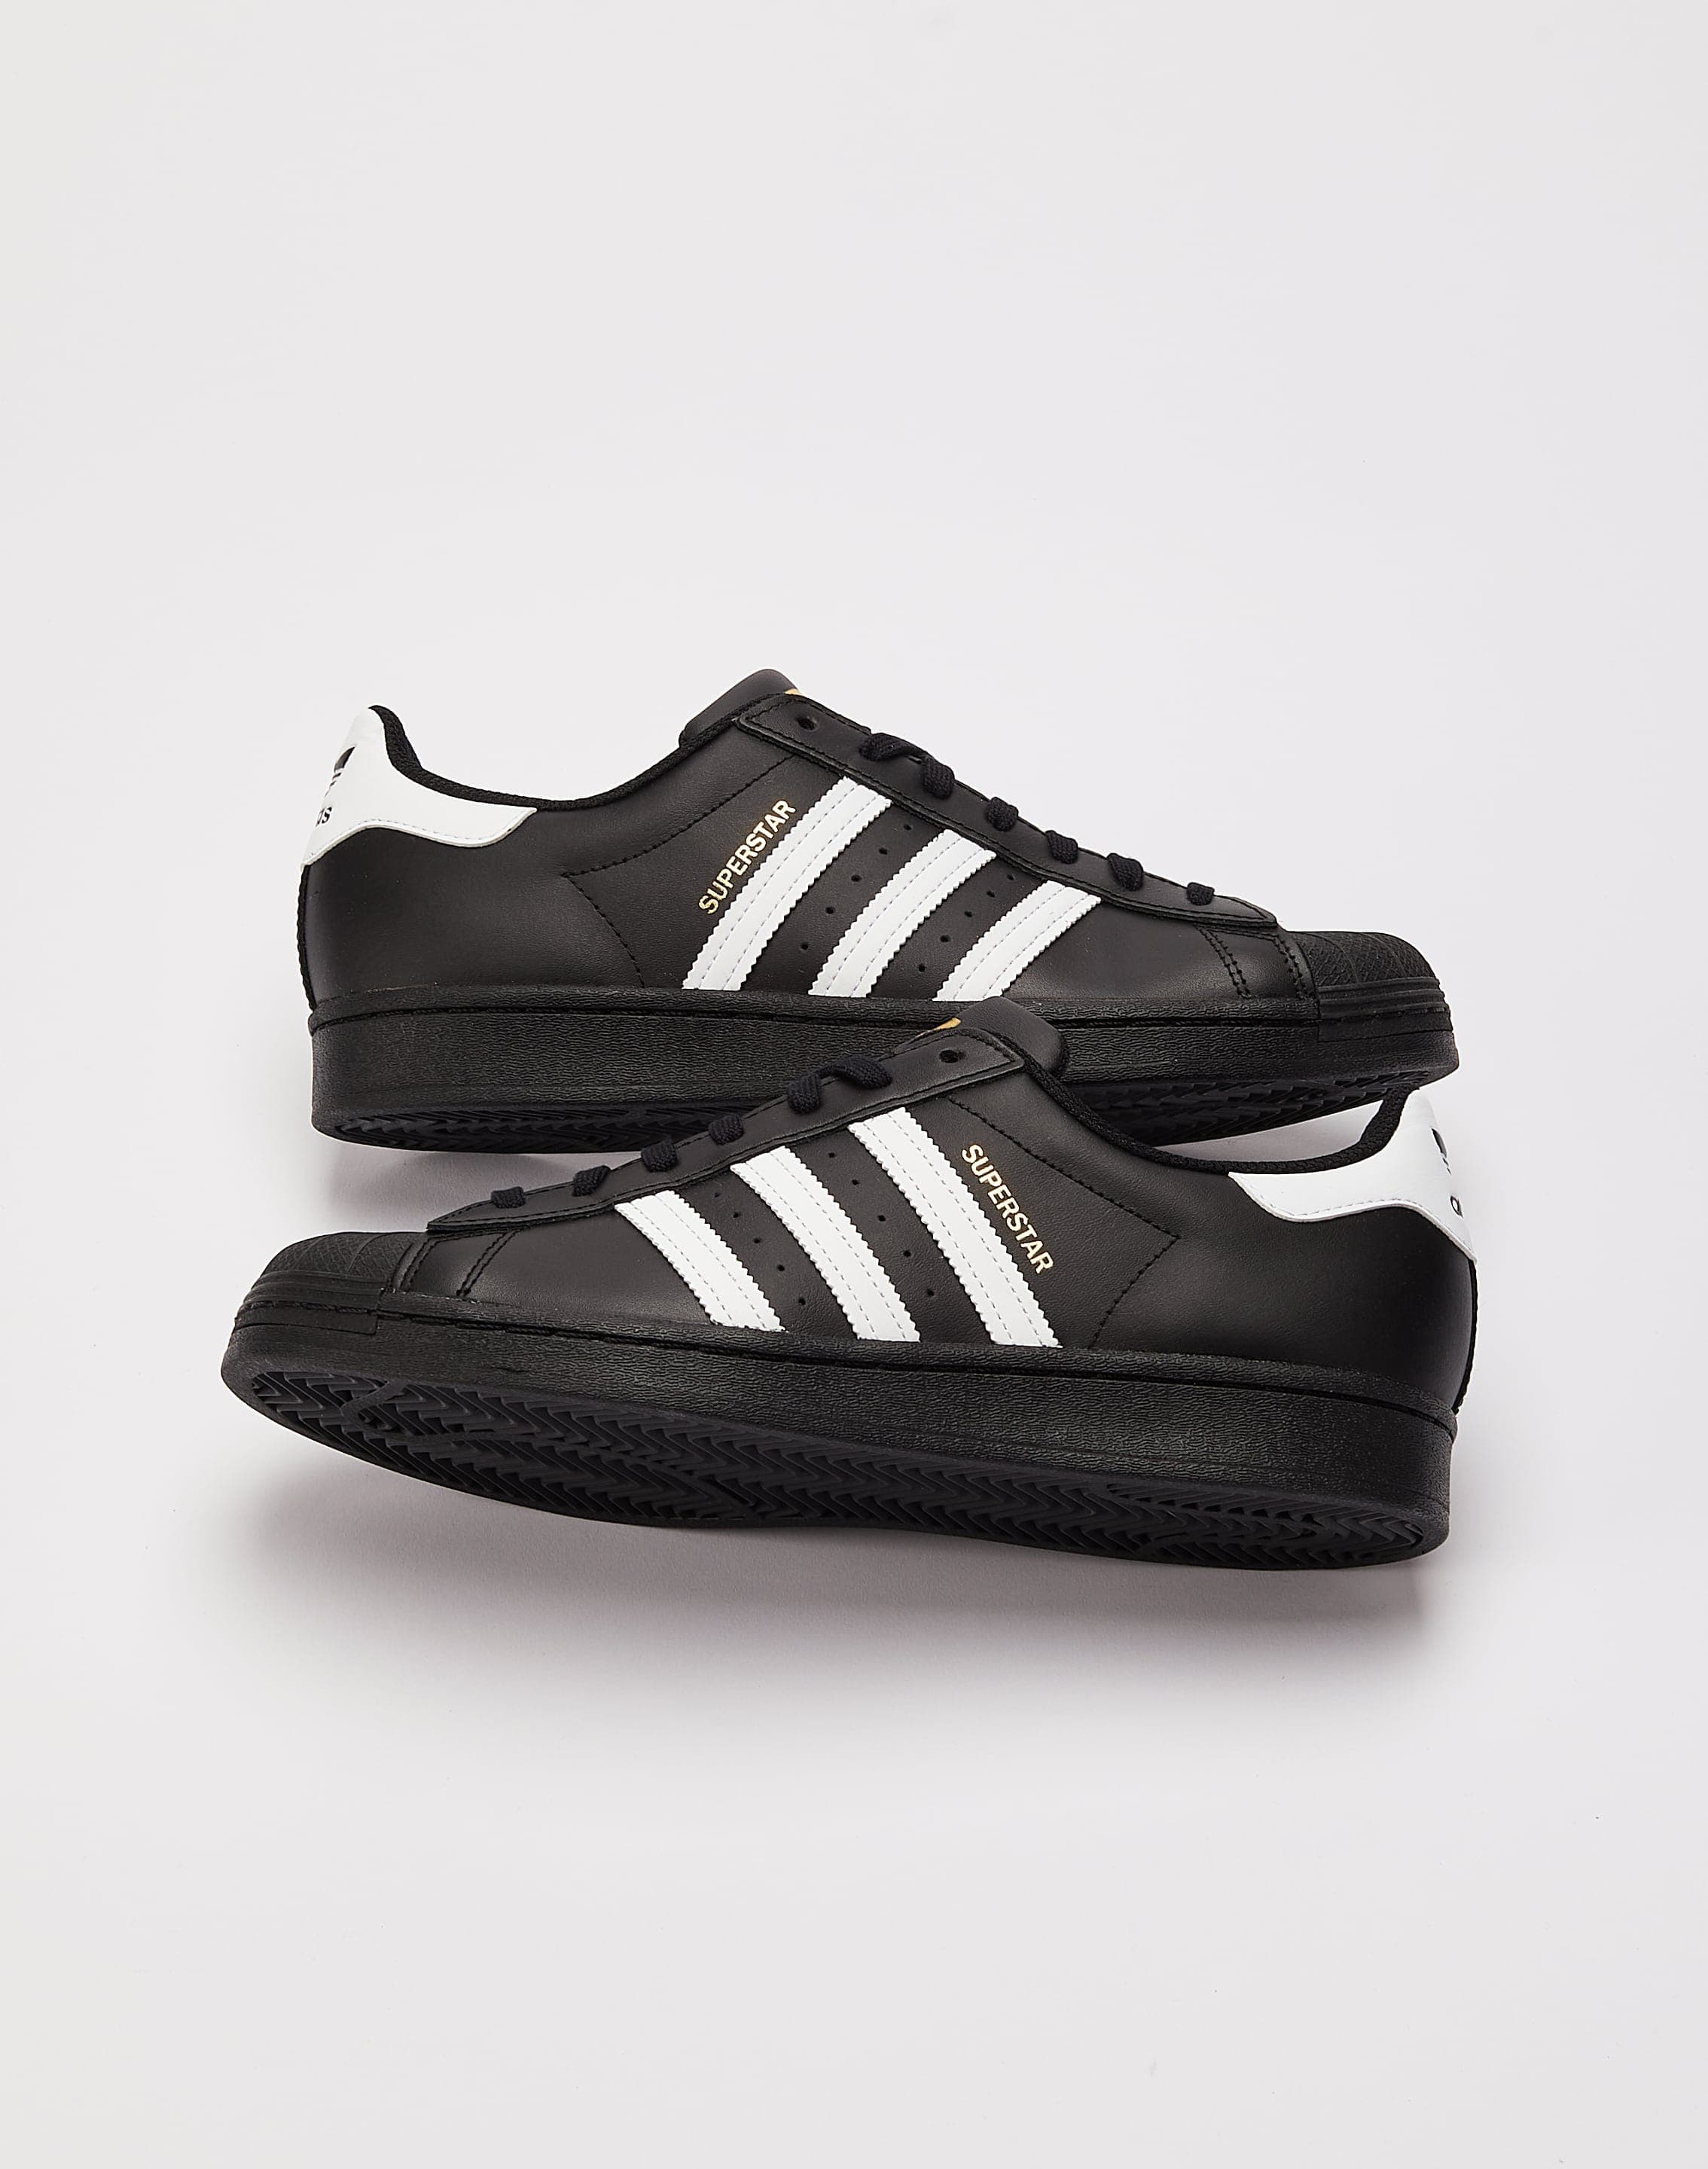  Black Shell Toe Adidas